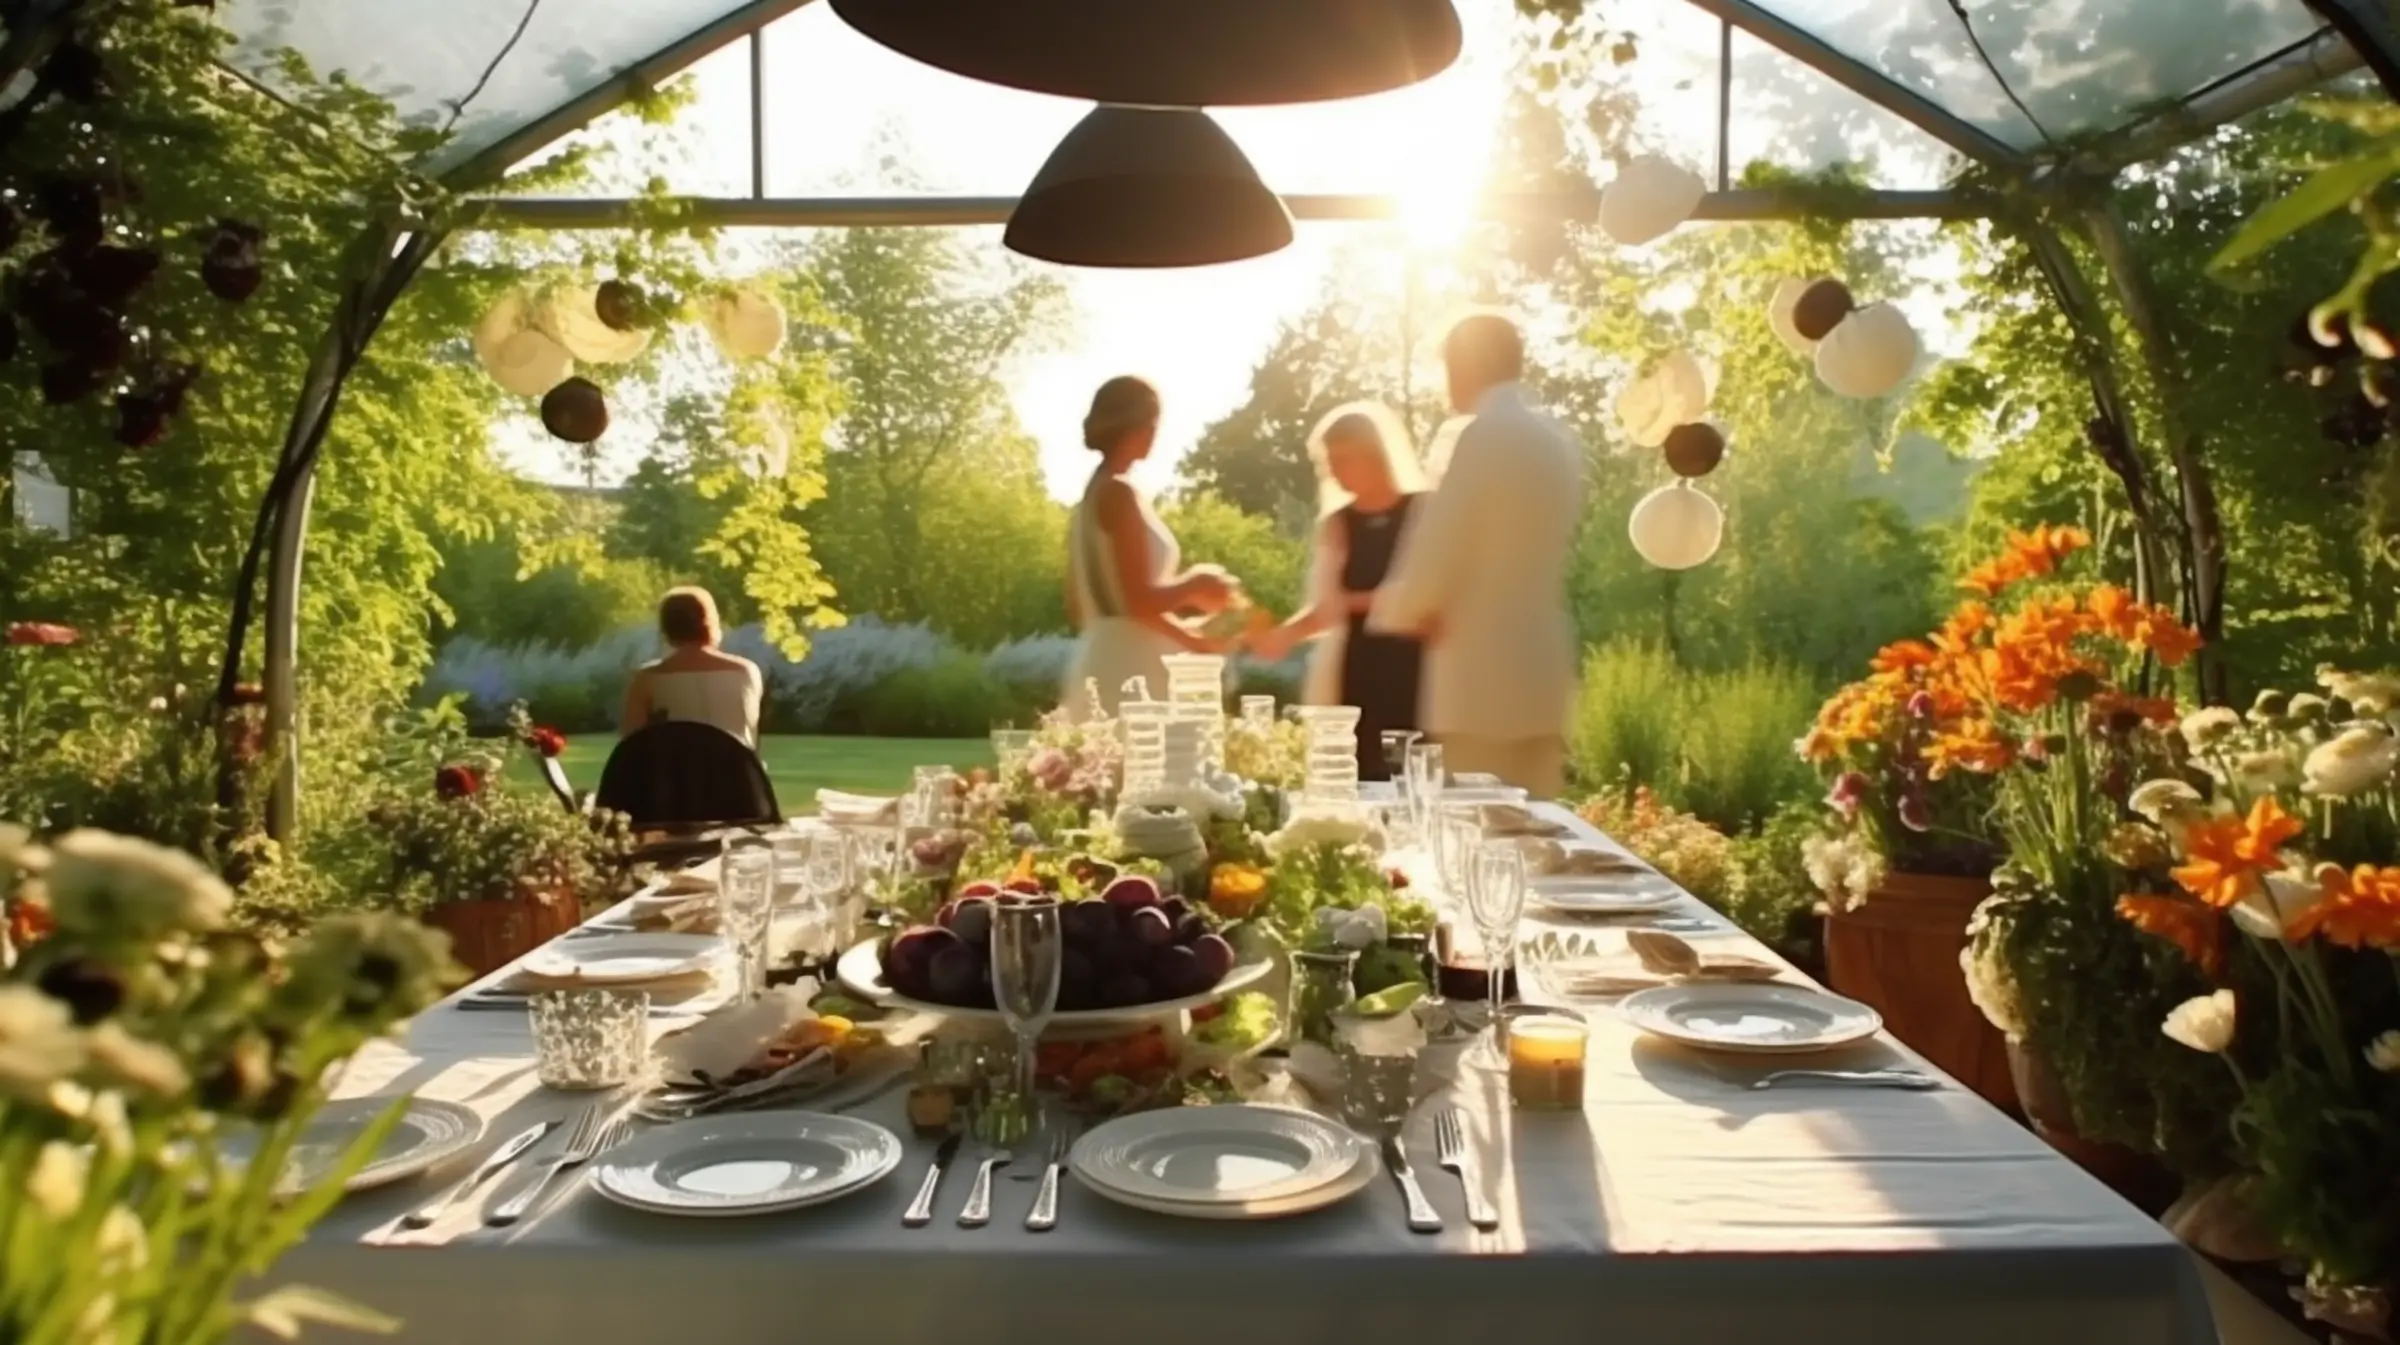 Coverbild Catering Hochzeiten Partyservice Lenhardt